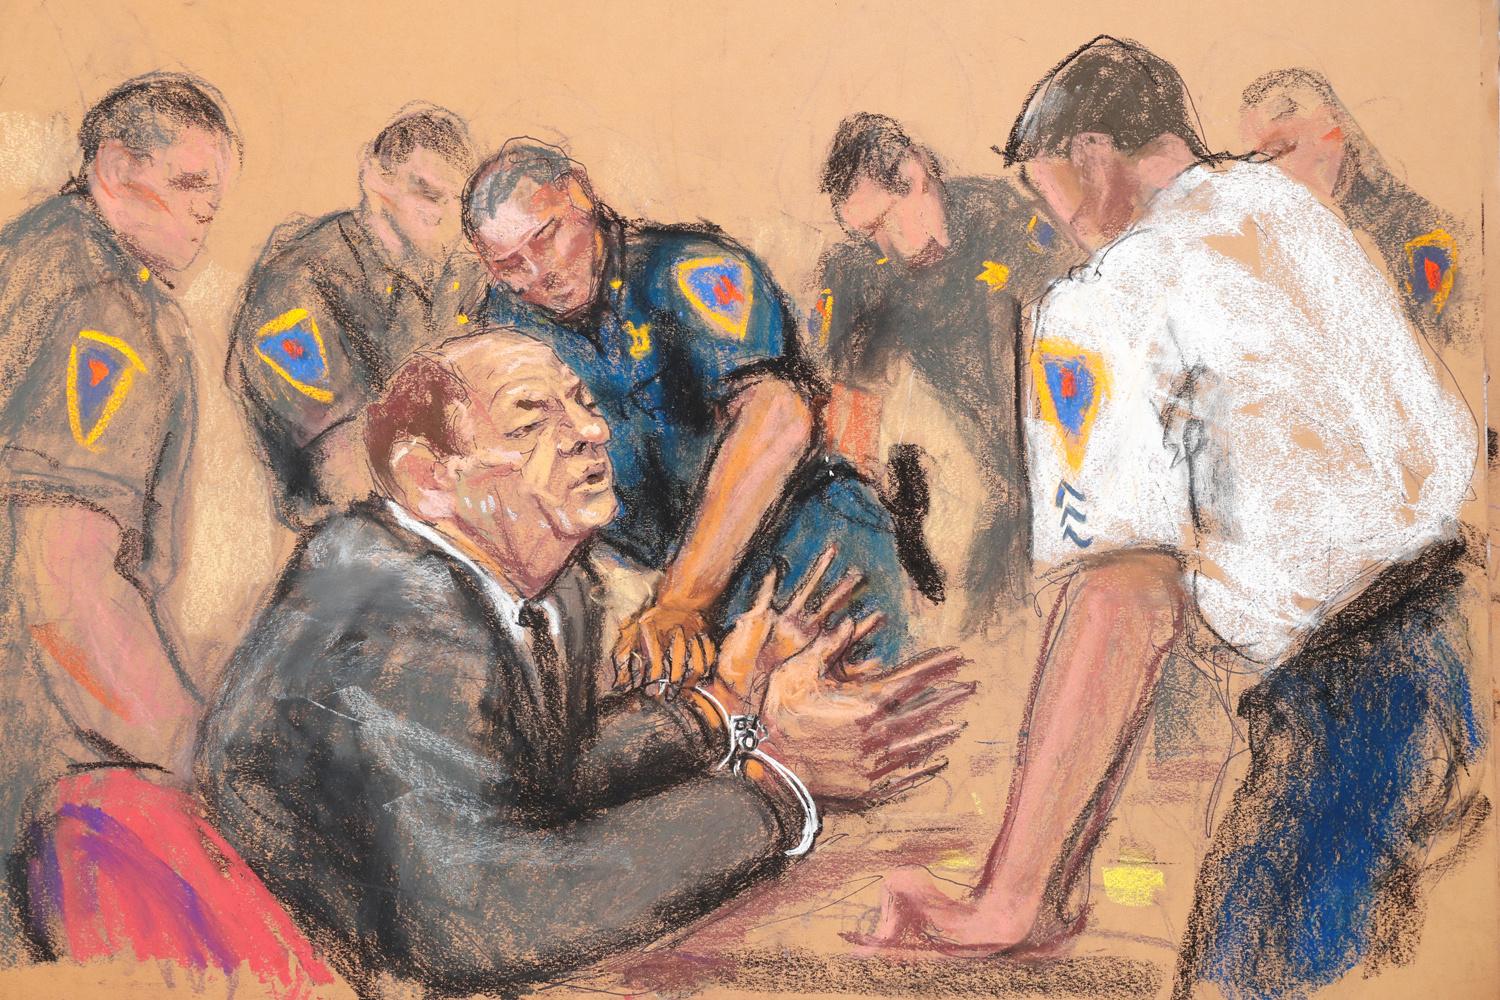 Harvey Weinstein, menottes aux mains après avoir été déclaré coupable.